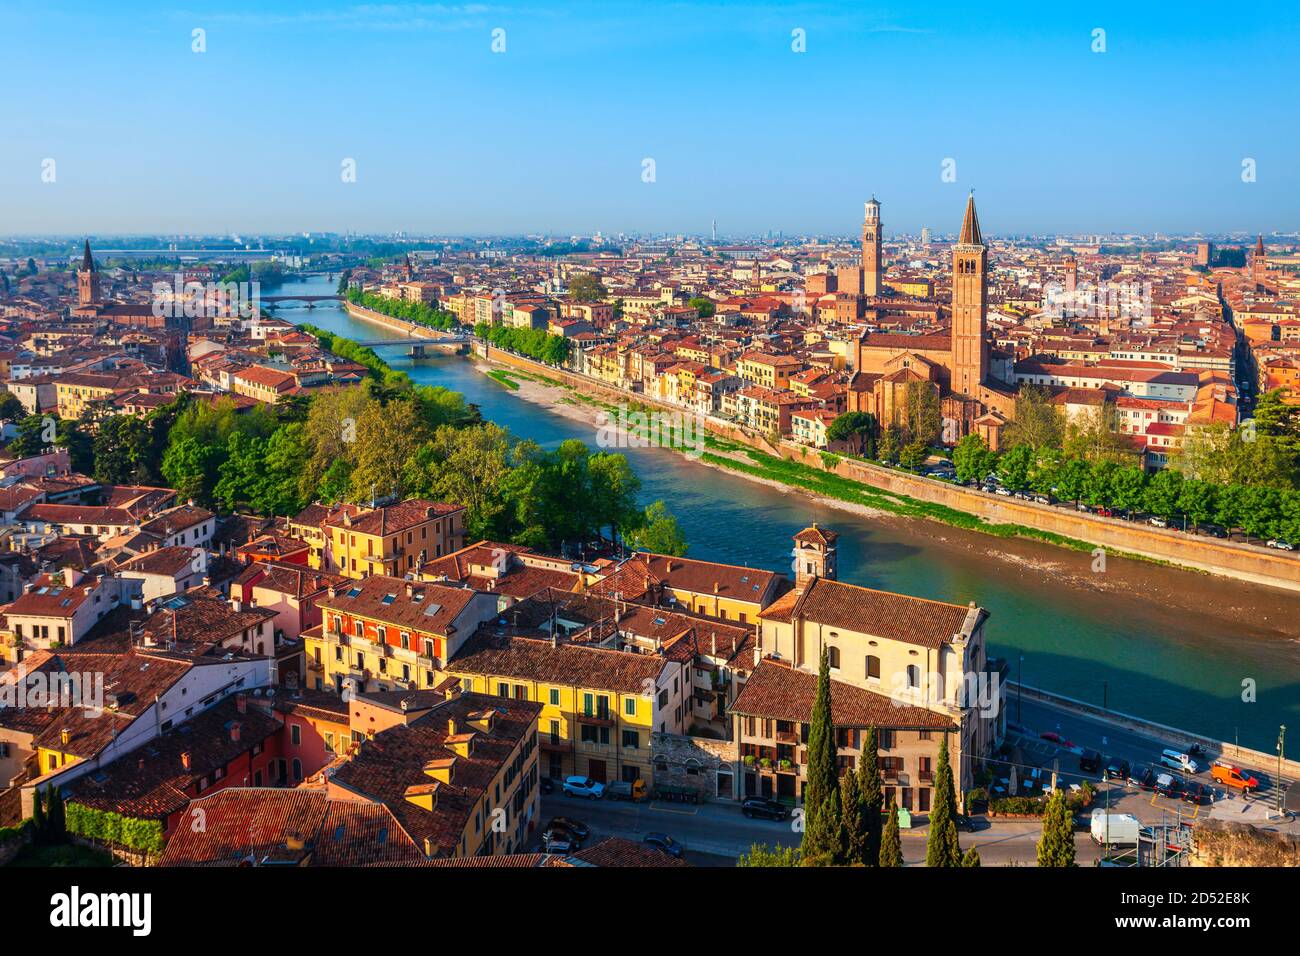 Antenna di Verona vista panoramica. Verona è una città sul fiume Adige nella regione Veneto in Italia. Foto Stock